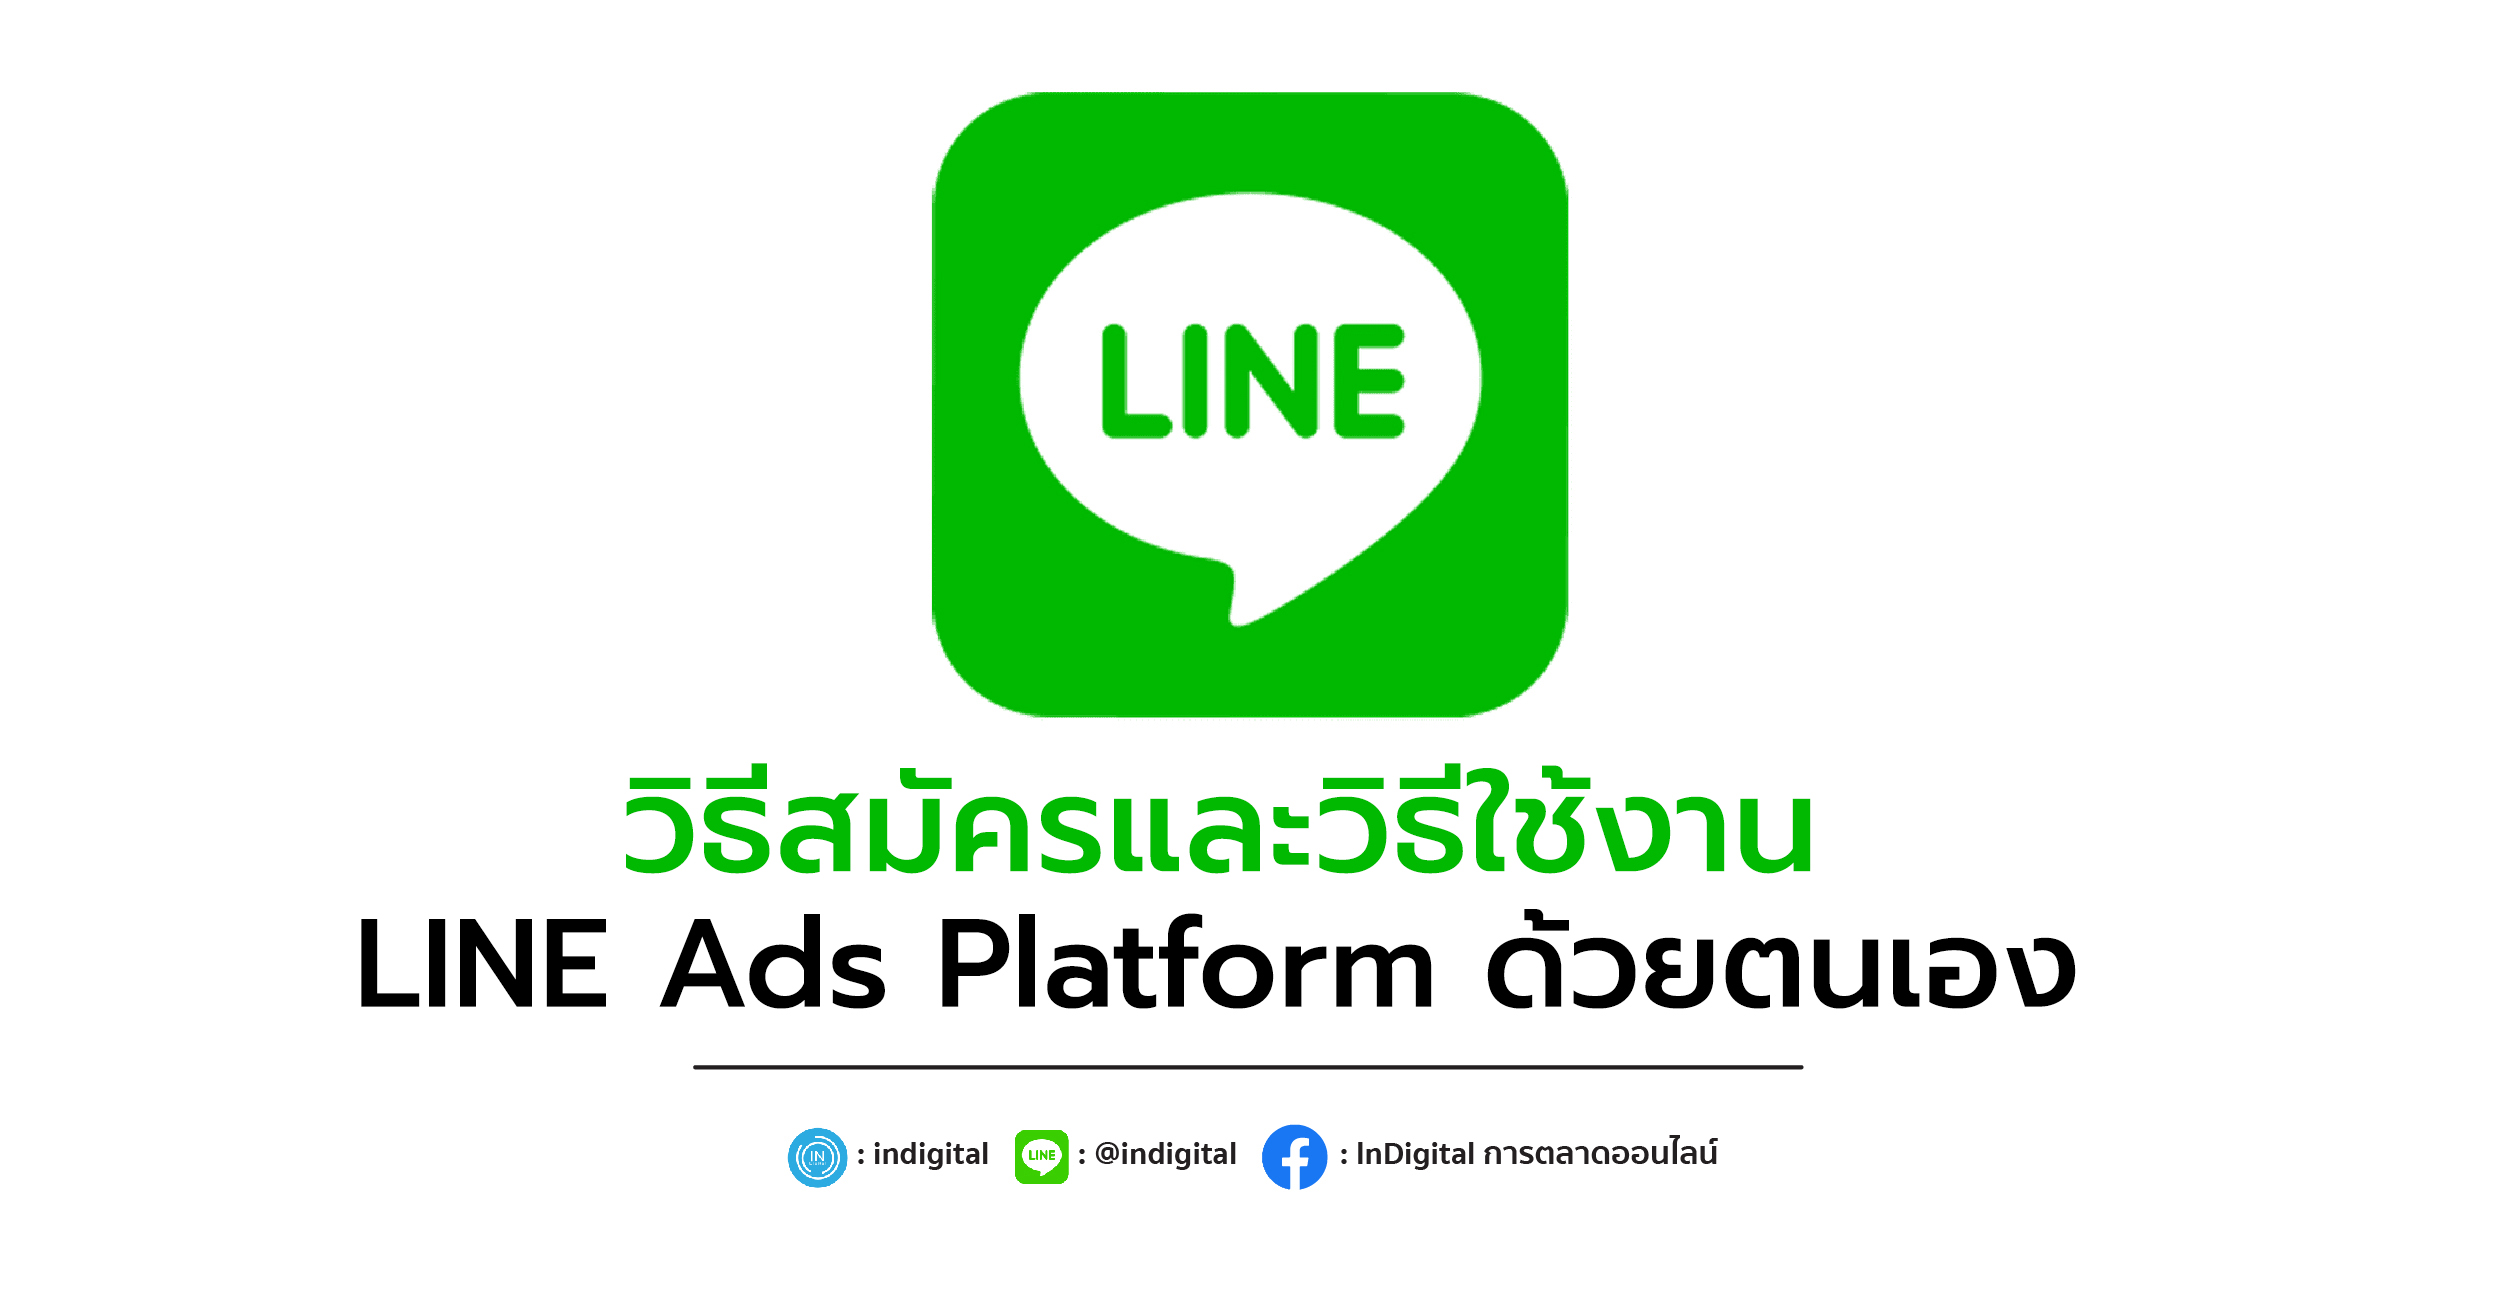 วิธีสมัครและวิธีใช้งาน LINE Ads Platform ด้วยตนเอง